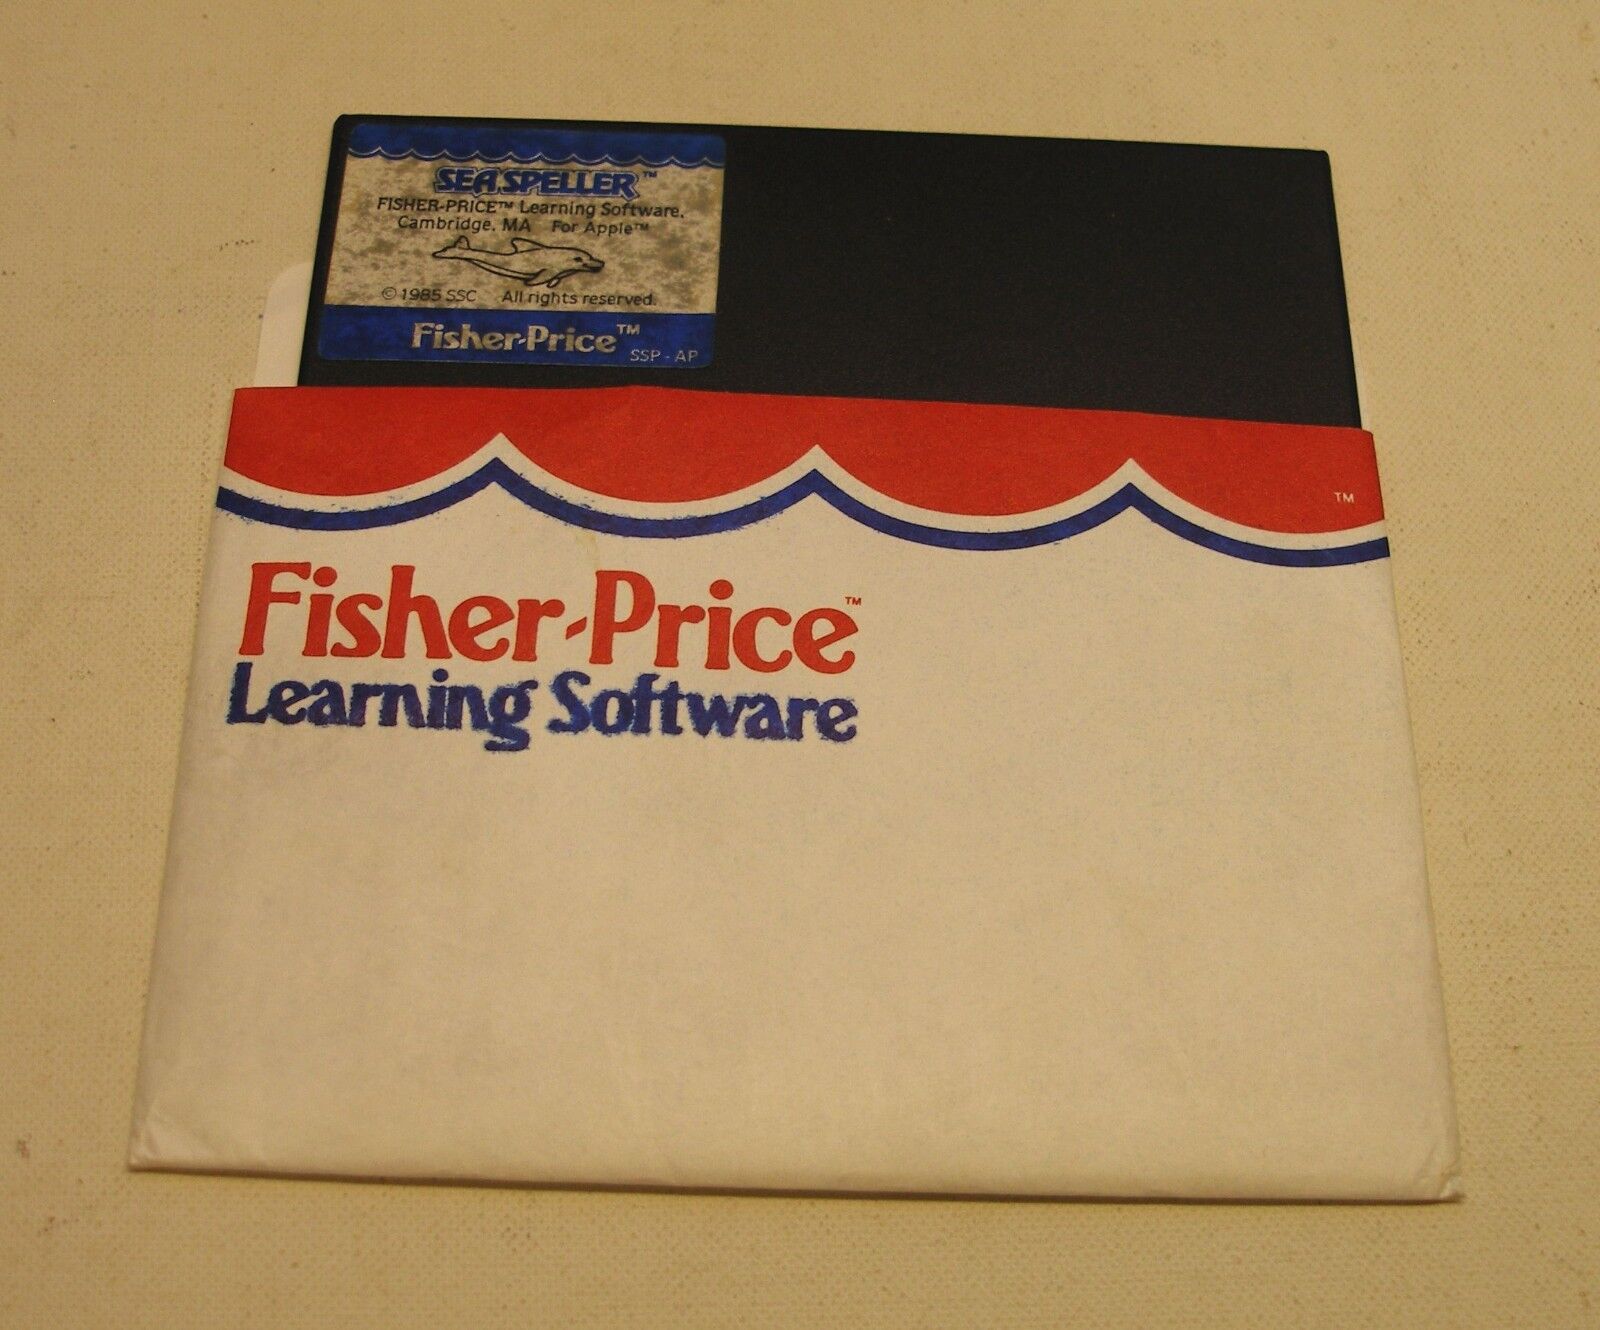 Sea Speller Disk by Fisher-Price for Apple II+, Apple IIe, Apple IIc, Apple IIGS